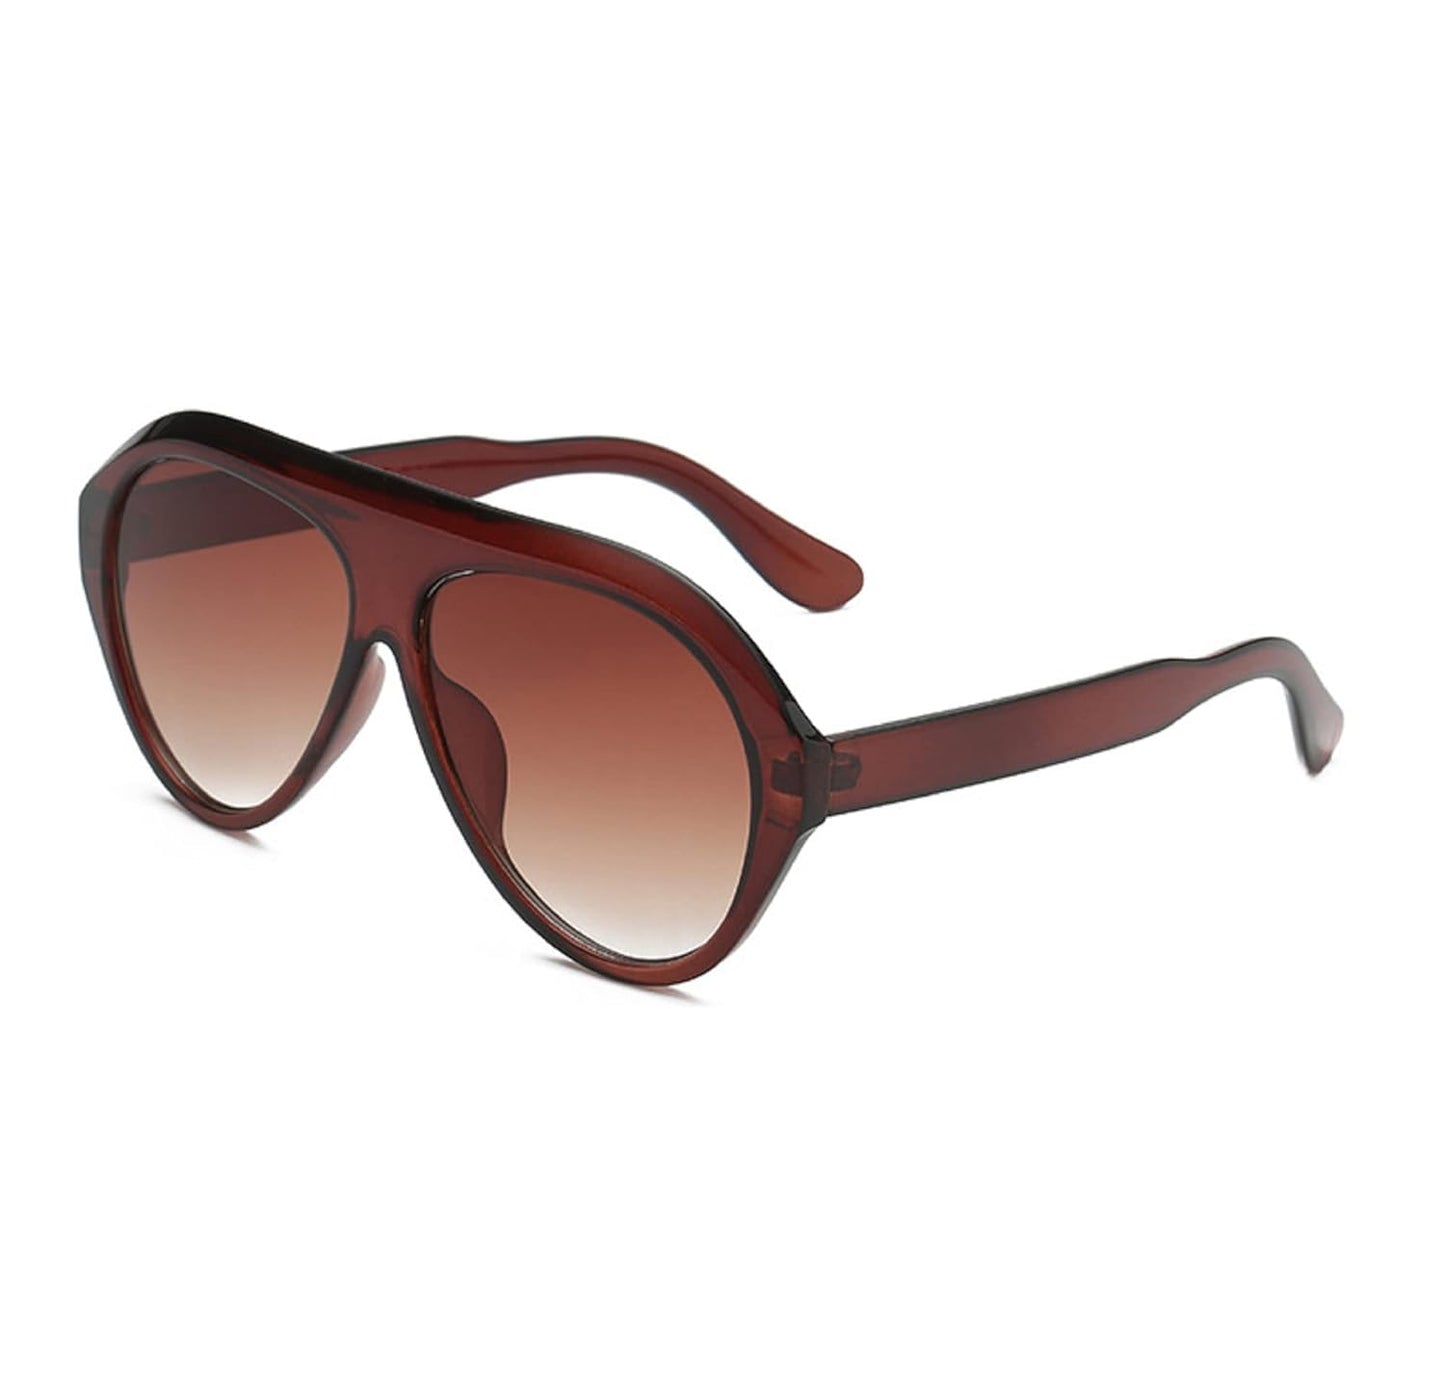 Fashion Unisex Oversized Frame Oval Shape Pilot Sunglasses